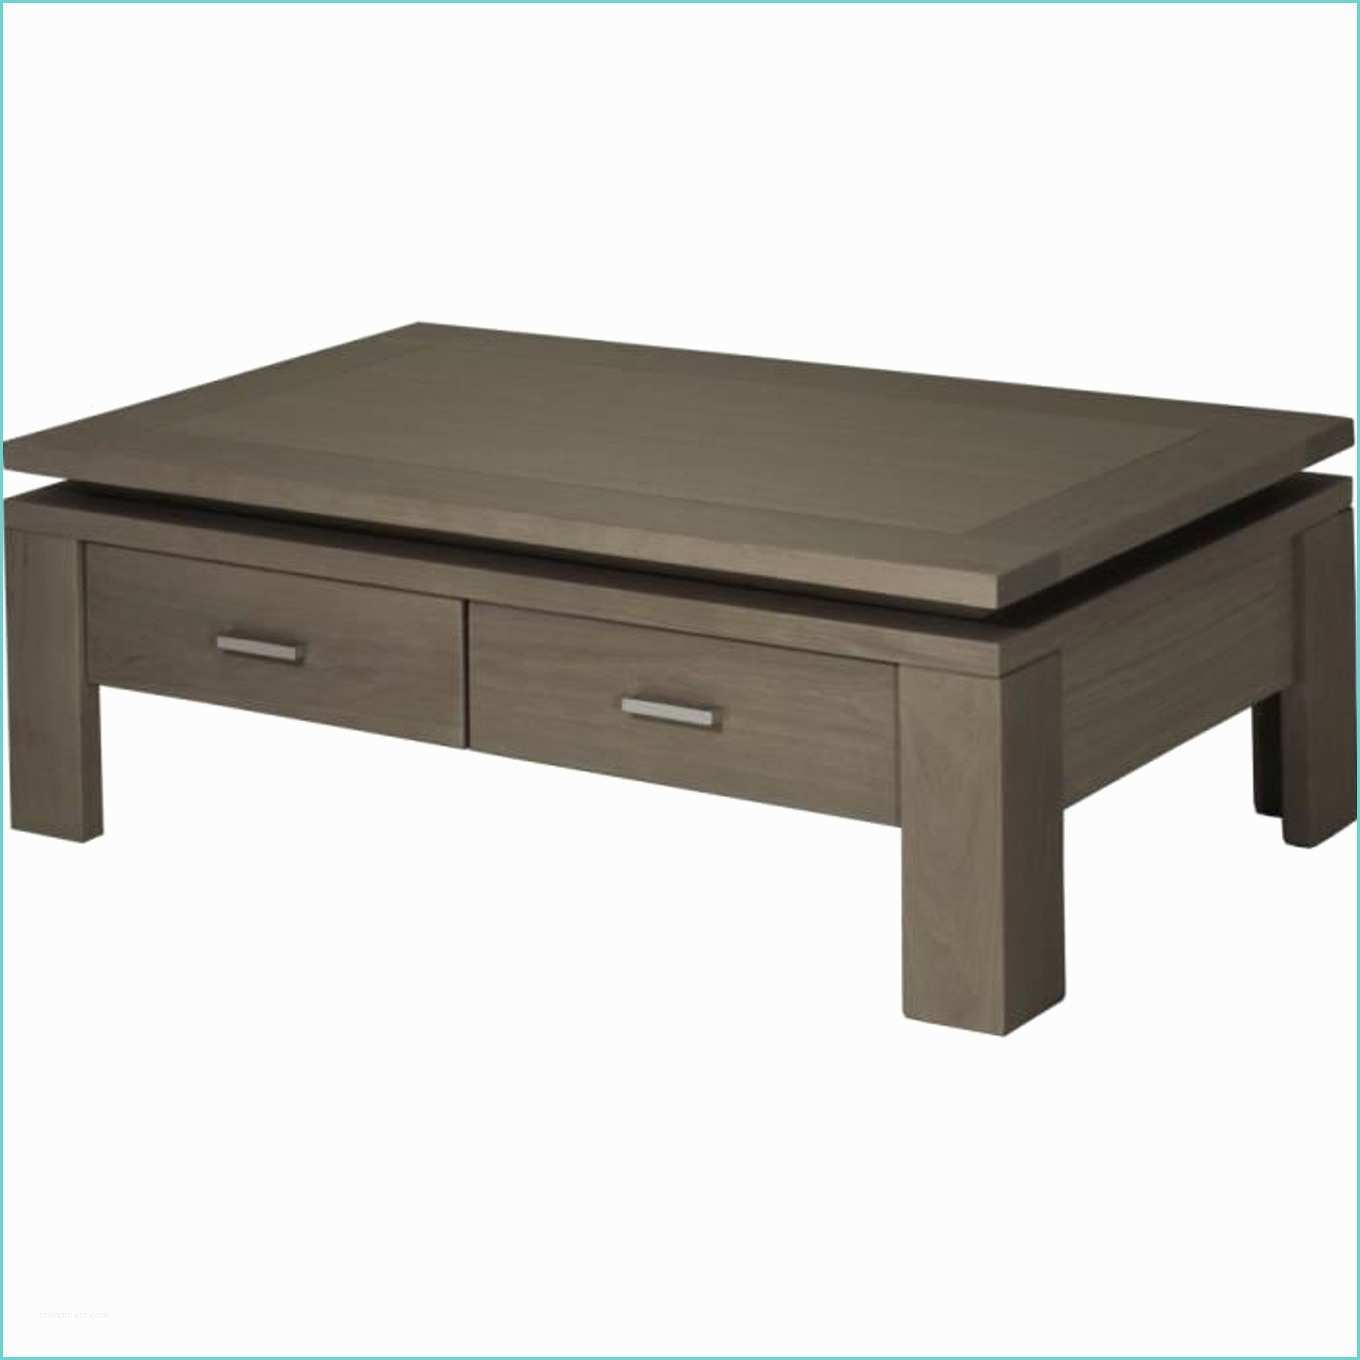 Table Basse Pliante Ikea Table Basse Design Pas Cher Ikea Le Bois Chez Vous